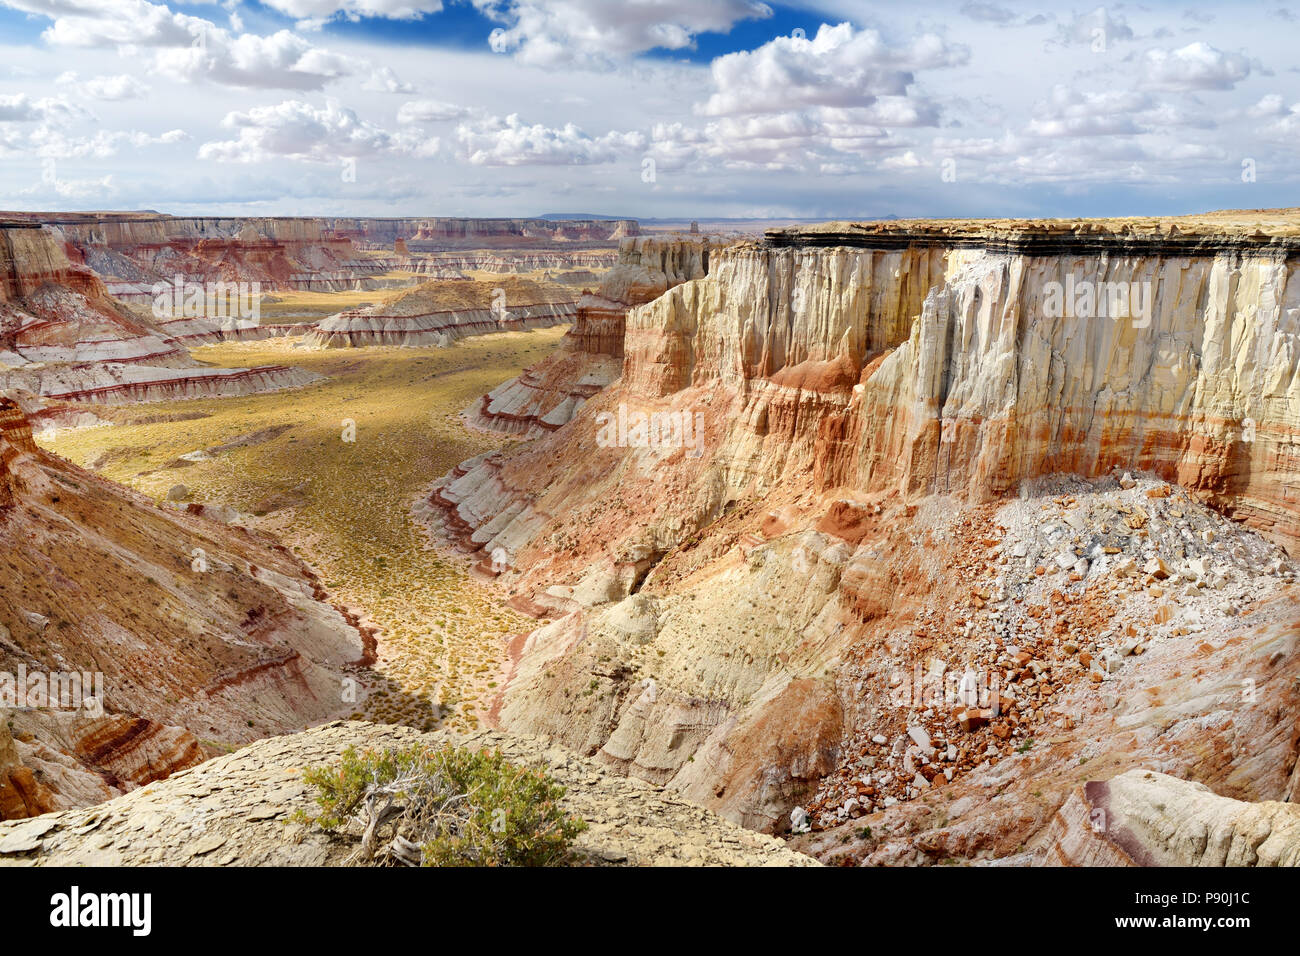 Vista panoramica di stordimento bianco striato hoodoos di arenaria nella miniera di carbone di Canyon vicino a Tuba City, Arizona, Stati Uniti d'America Foto Stock